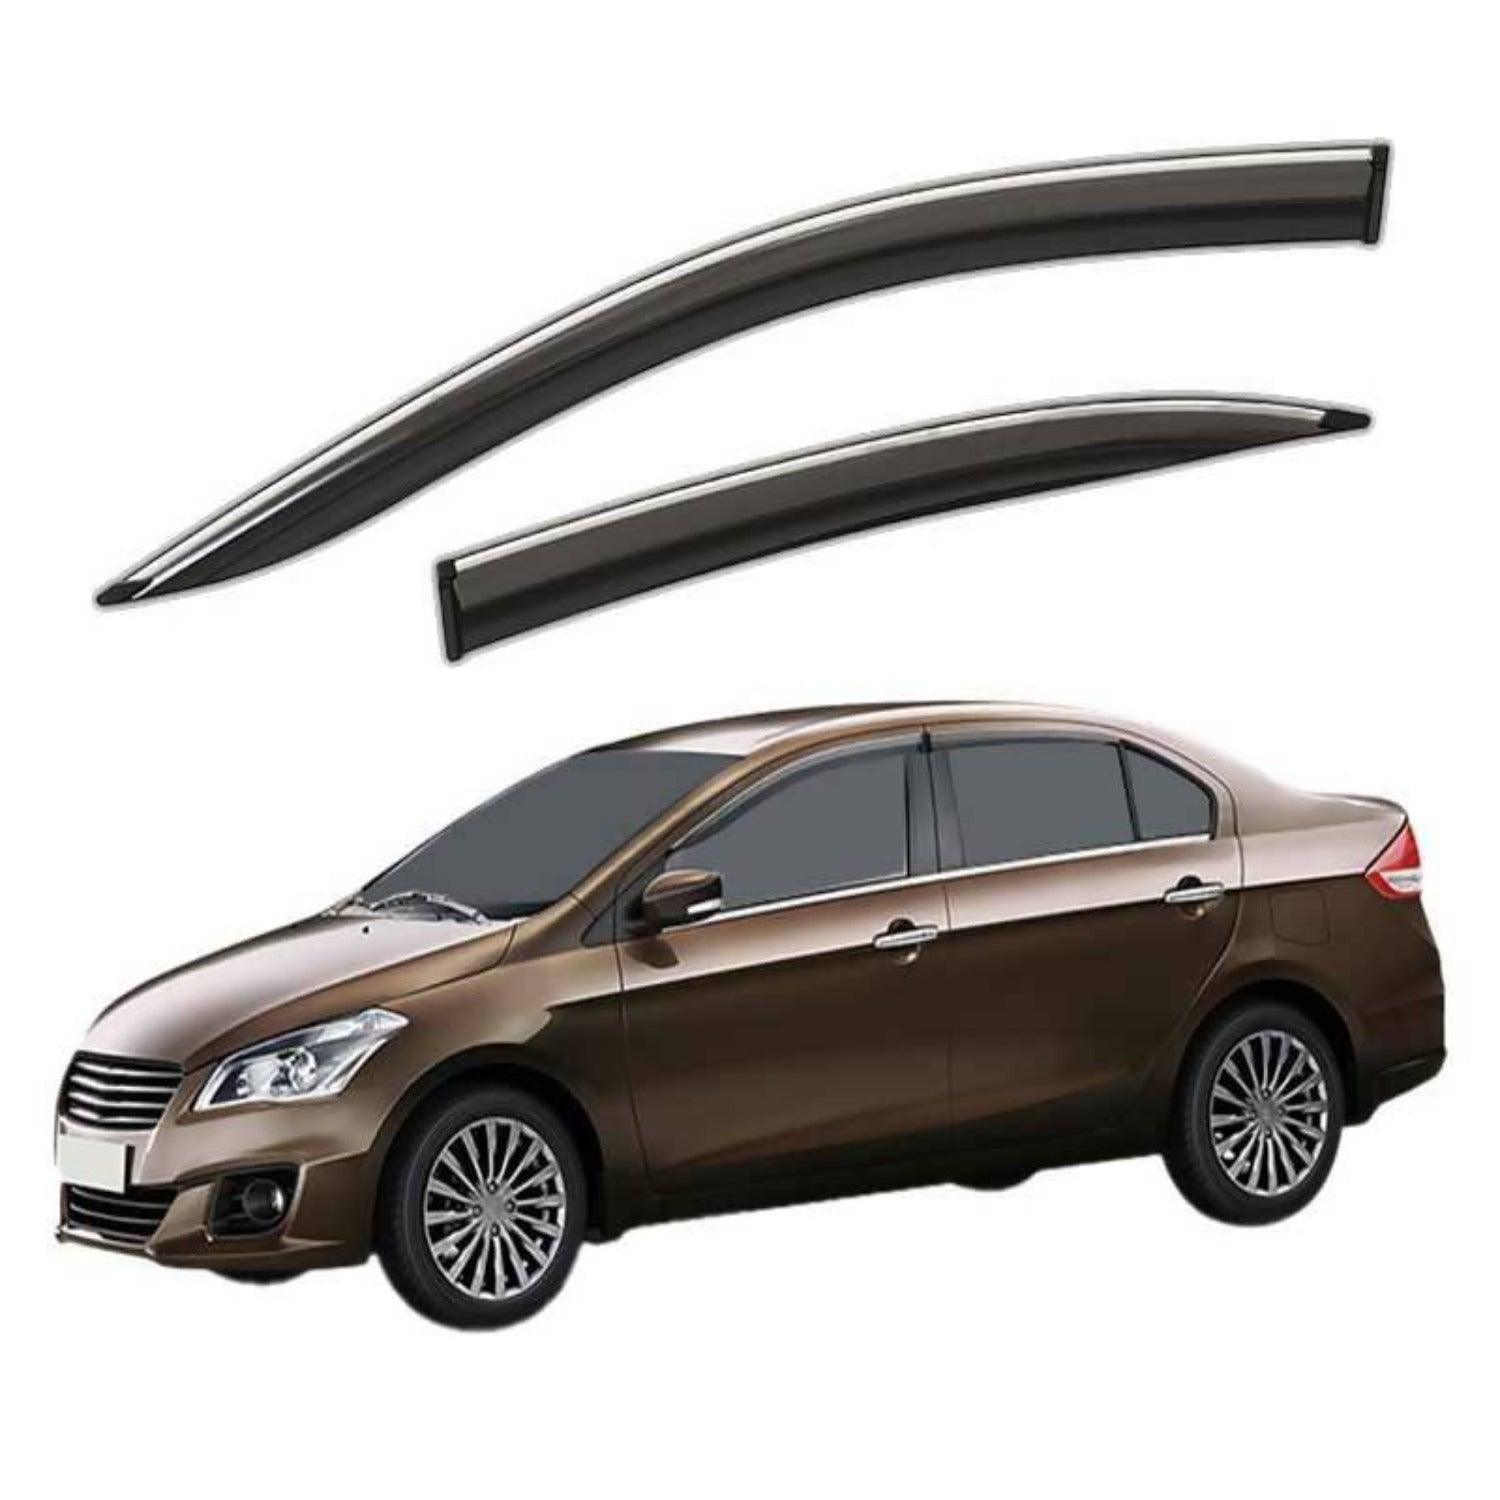 Galio Car Window Door Wind Visor with Silver Chrome Line for Maruti Suzuki Ciaz 2014 Onwards - Autosparz